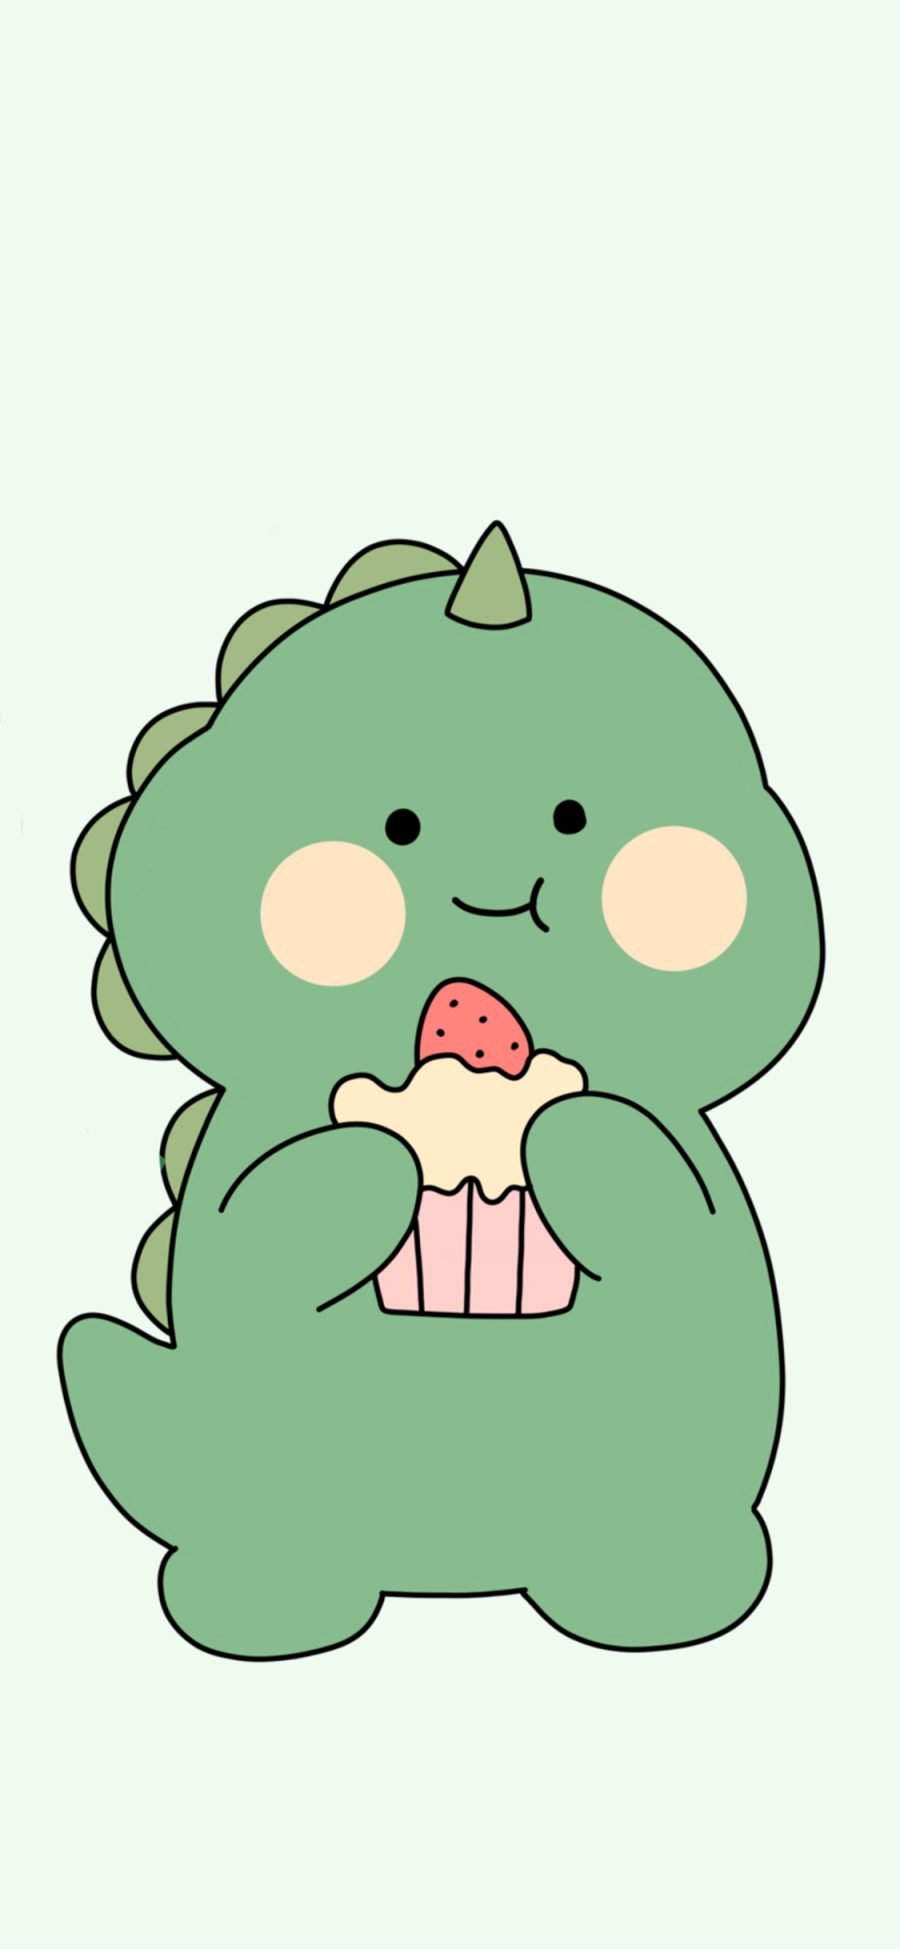 [2436×1125]小恐龙 可爱 蛋糕 绿 苹果手机动漫壁纸图片